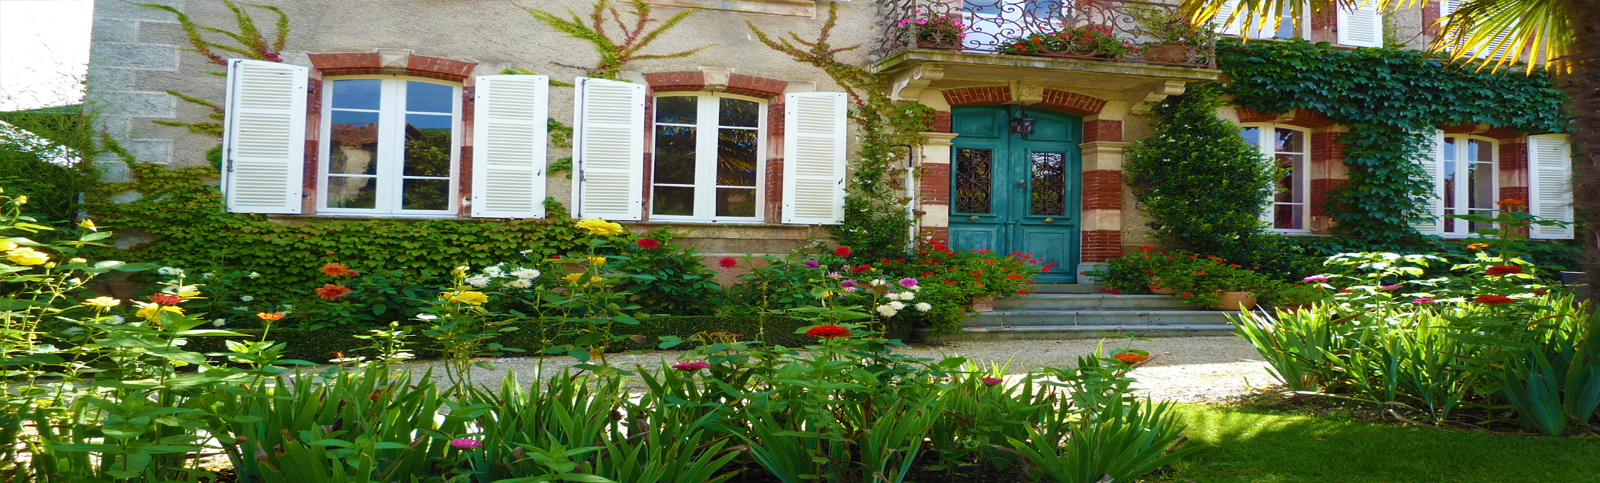 La Flambelle : habitaciones de encanto - Pirineos - Izault-de-L'Hôtel